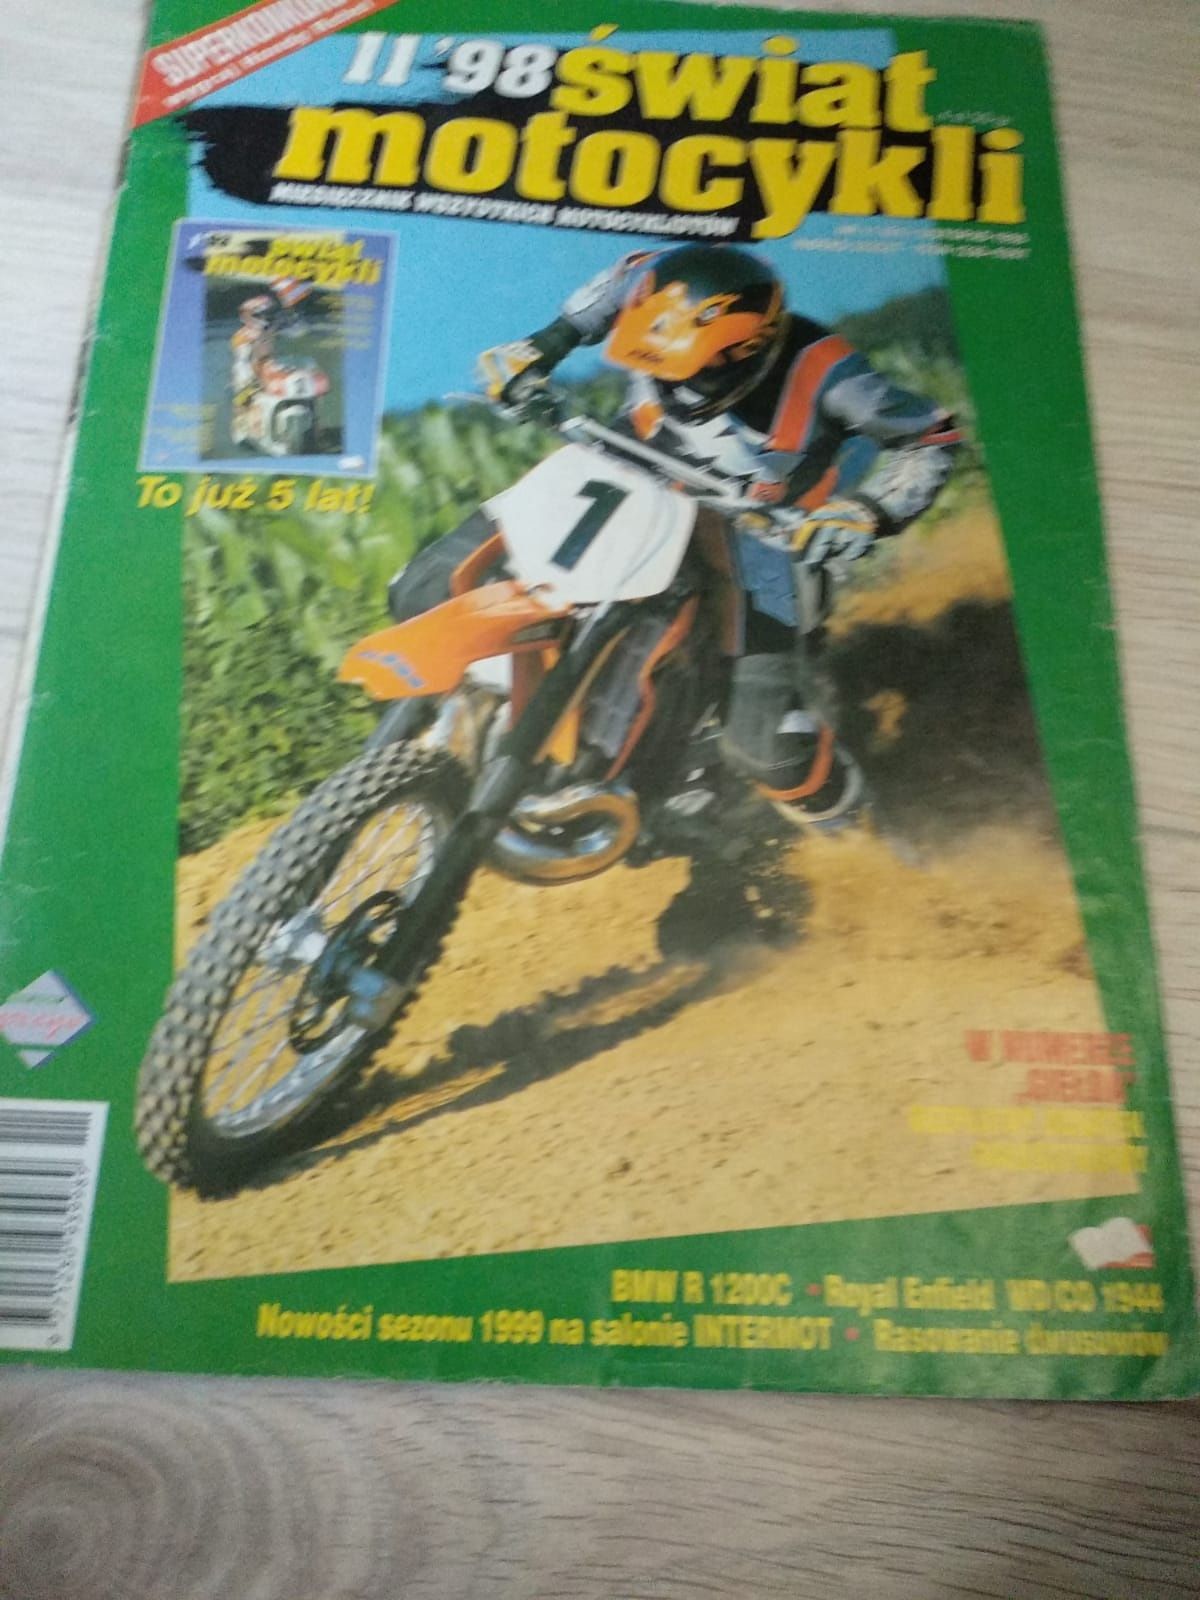 Gazeta, czasopismo, magazyn motocyklowy, świat motocykli listopad 1998